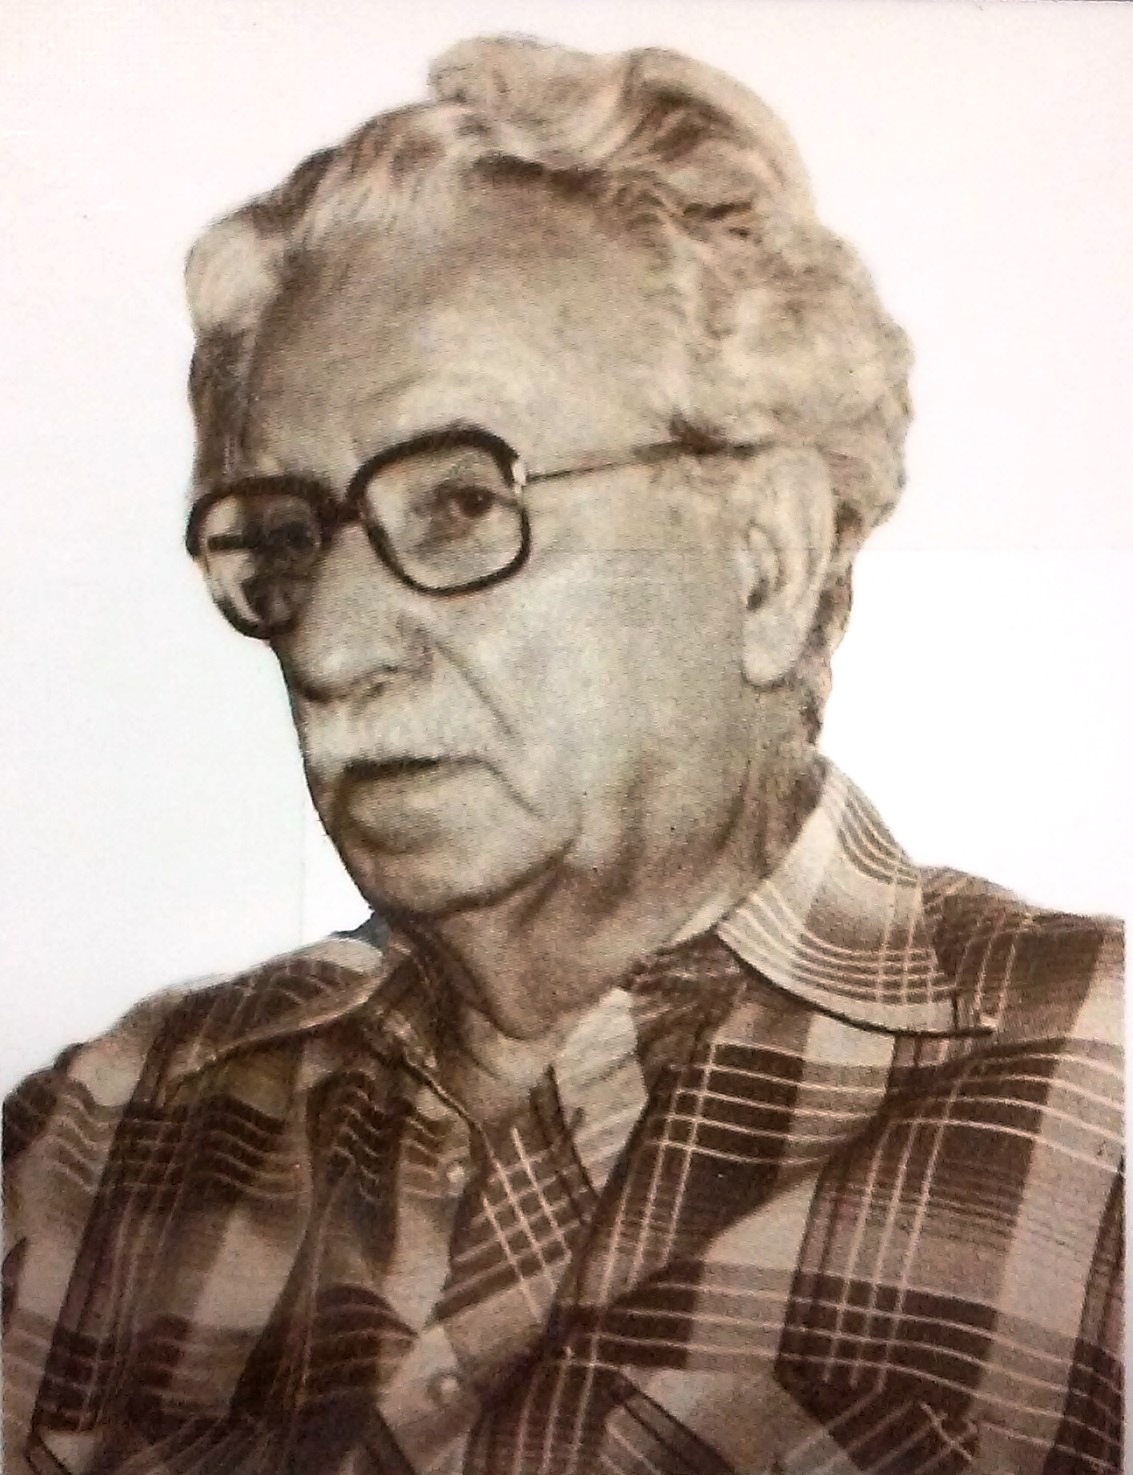 Zvonimir Kulundžić in his late years.